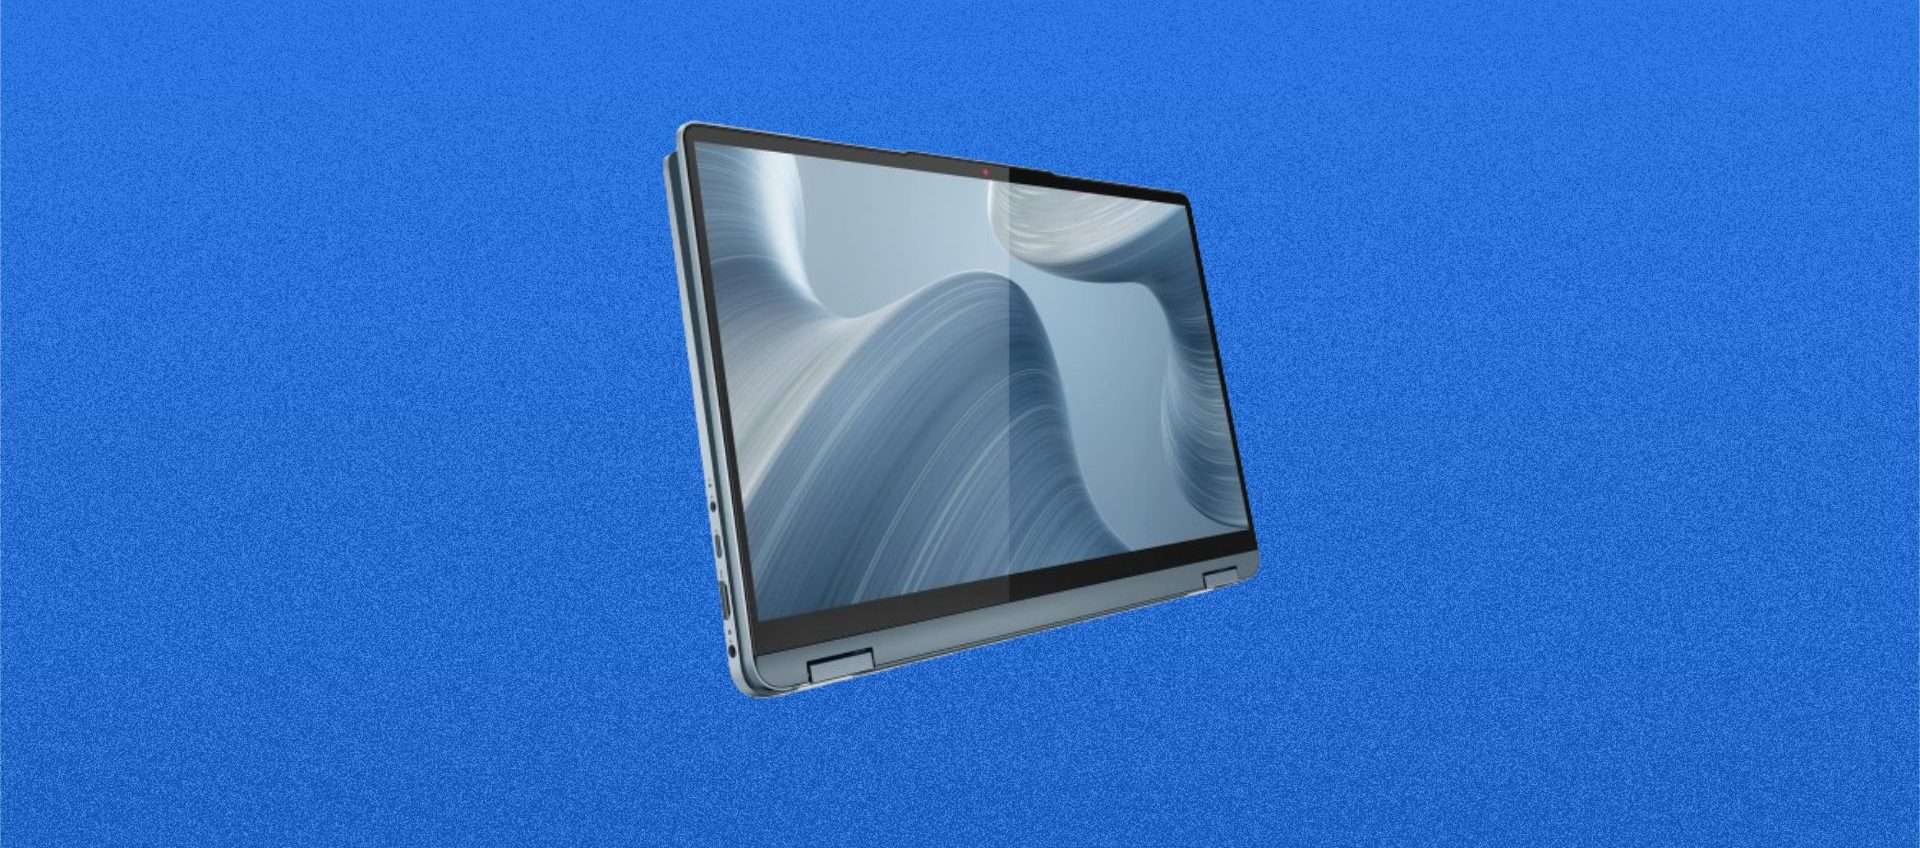 Lenovo IdeaPad Flex 5 in offerta: il laptop si trasforma in un tablet